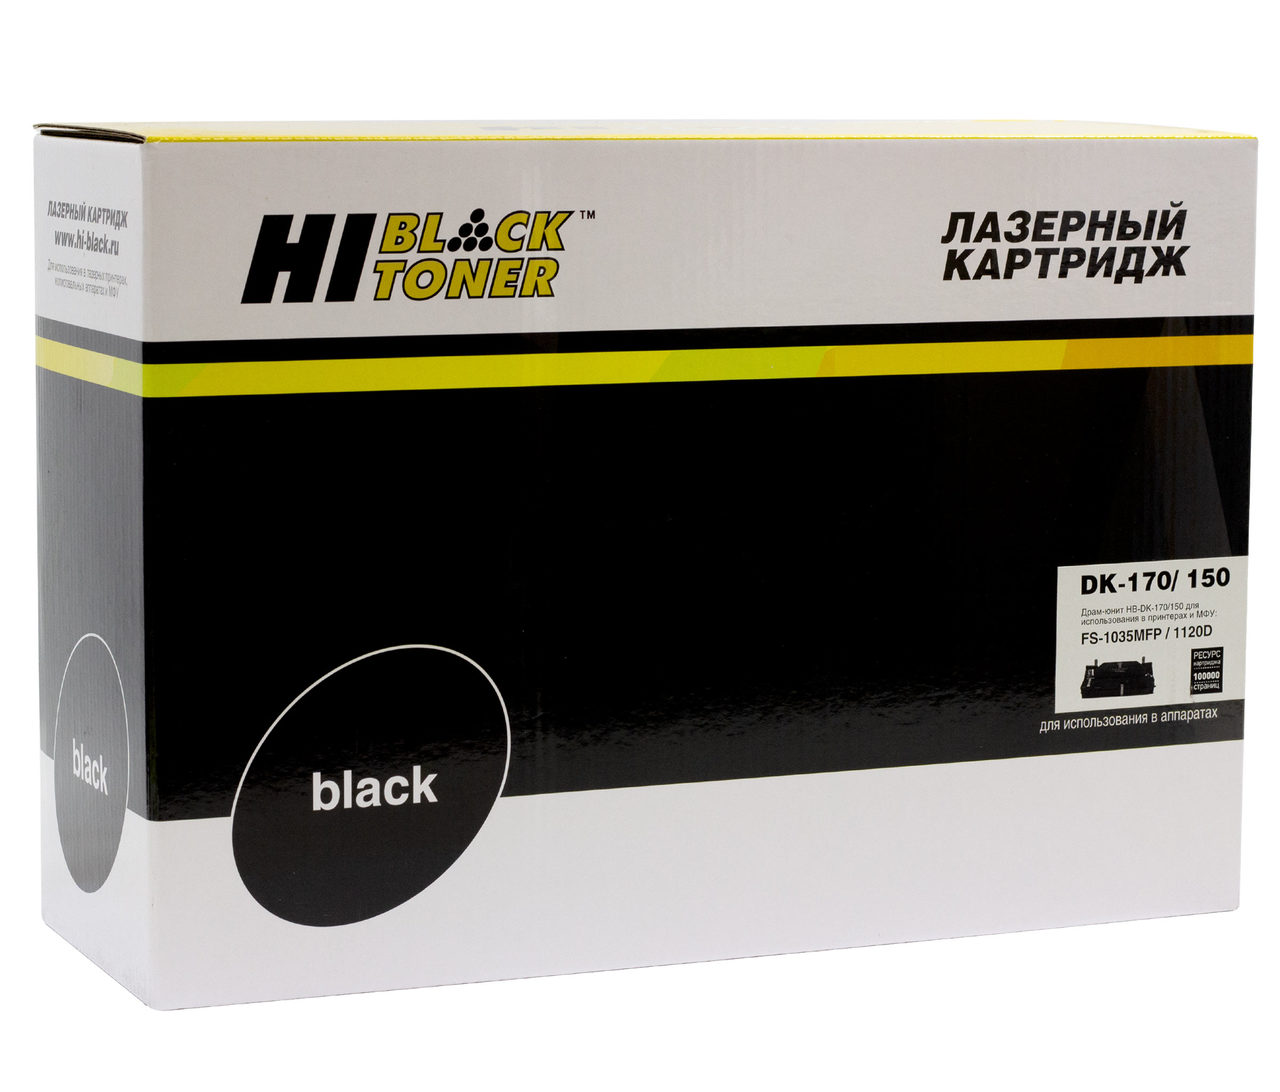 Драм-юнит Hi-Black (HB-DK-170/150) для KyoceraFS-1035MFP/1120D, Универс., 100К